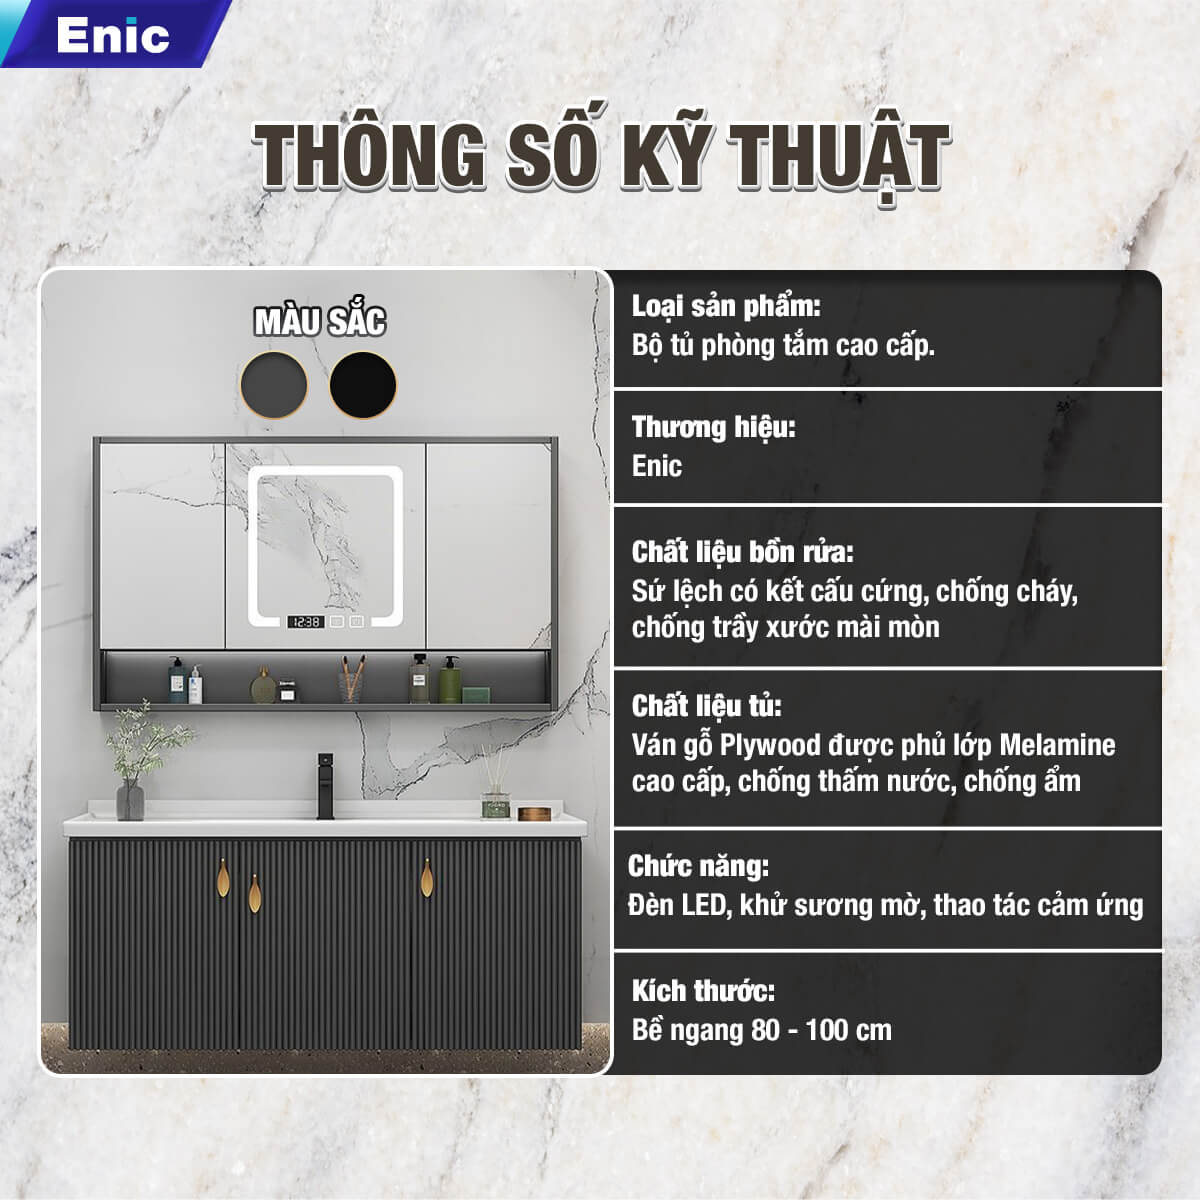 Bộ tủ phòng tắm cao cấp Enic LS - 100cm Gương Thông Minh - 36